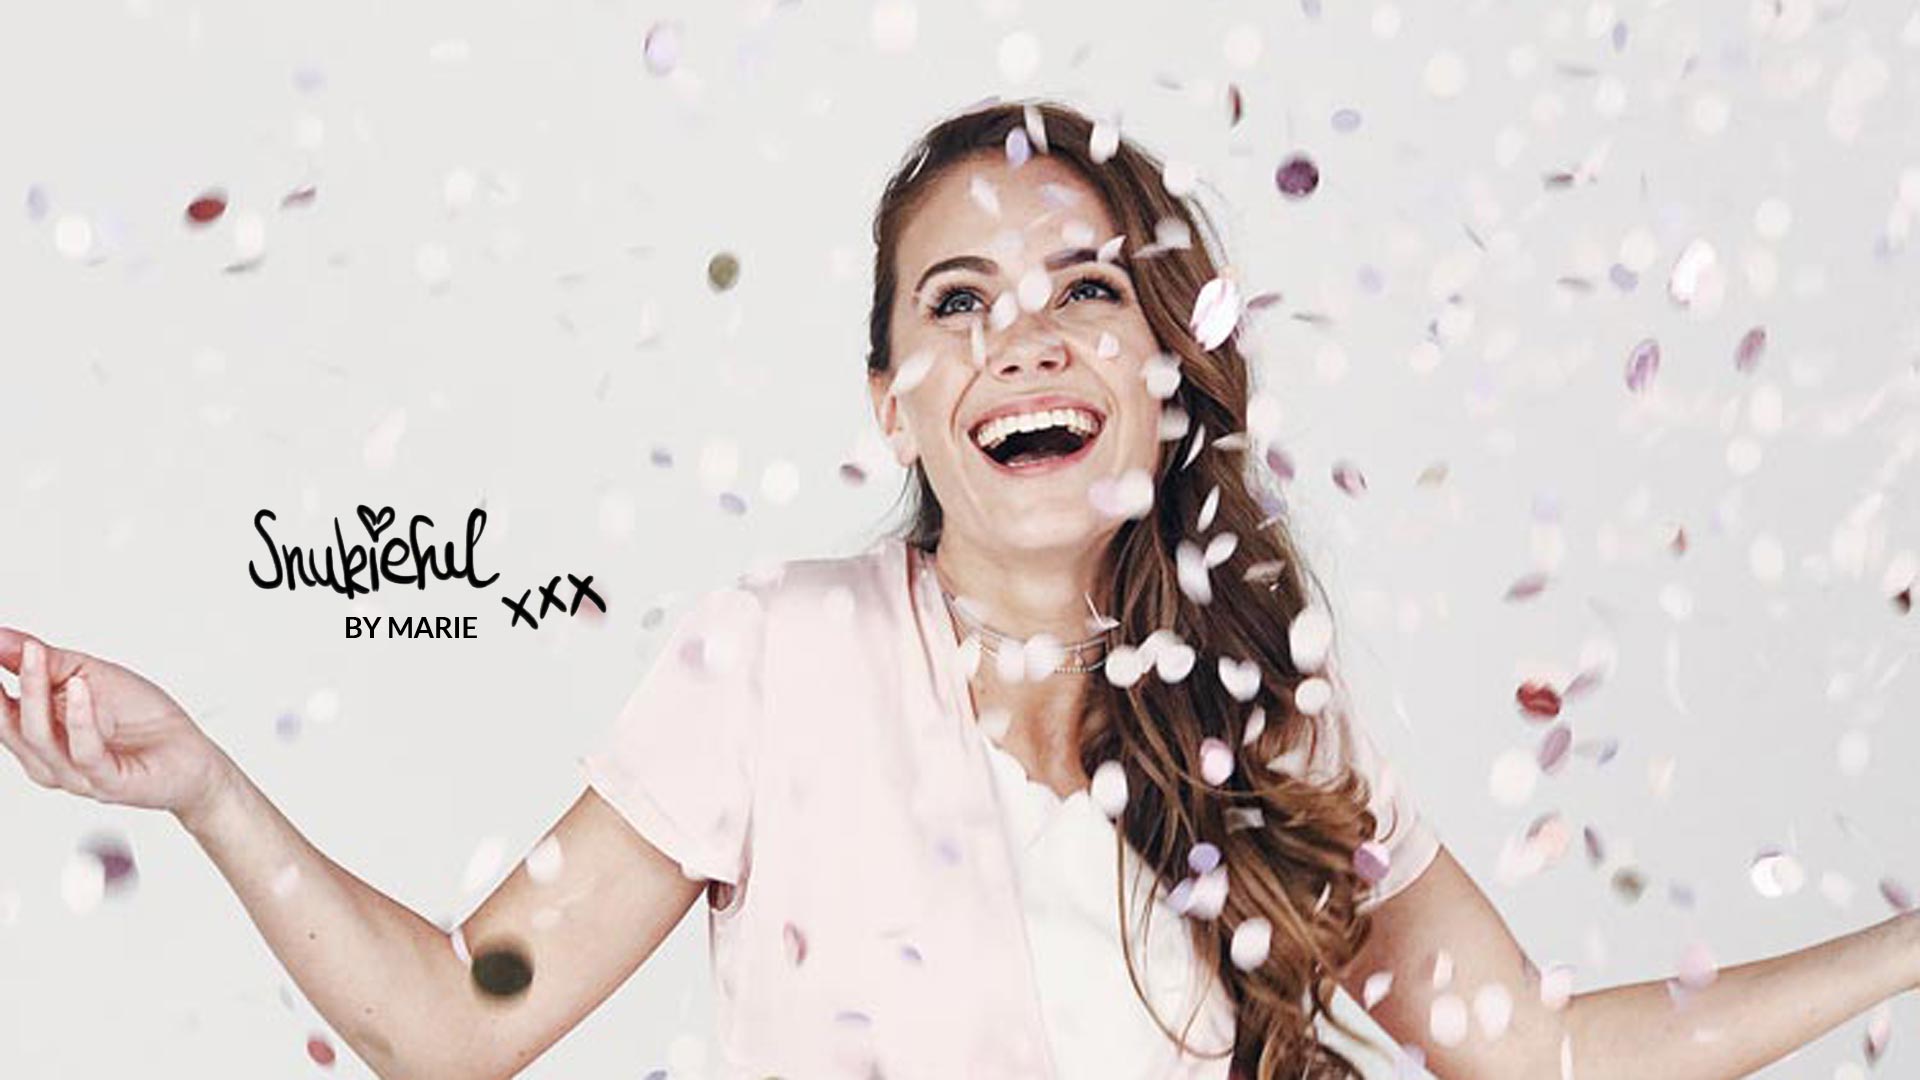 snukiful-interview-blogger-youtuber-instagram-star-girl-glücklich-konfetti-spaß